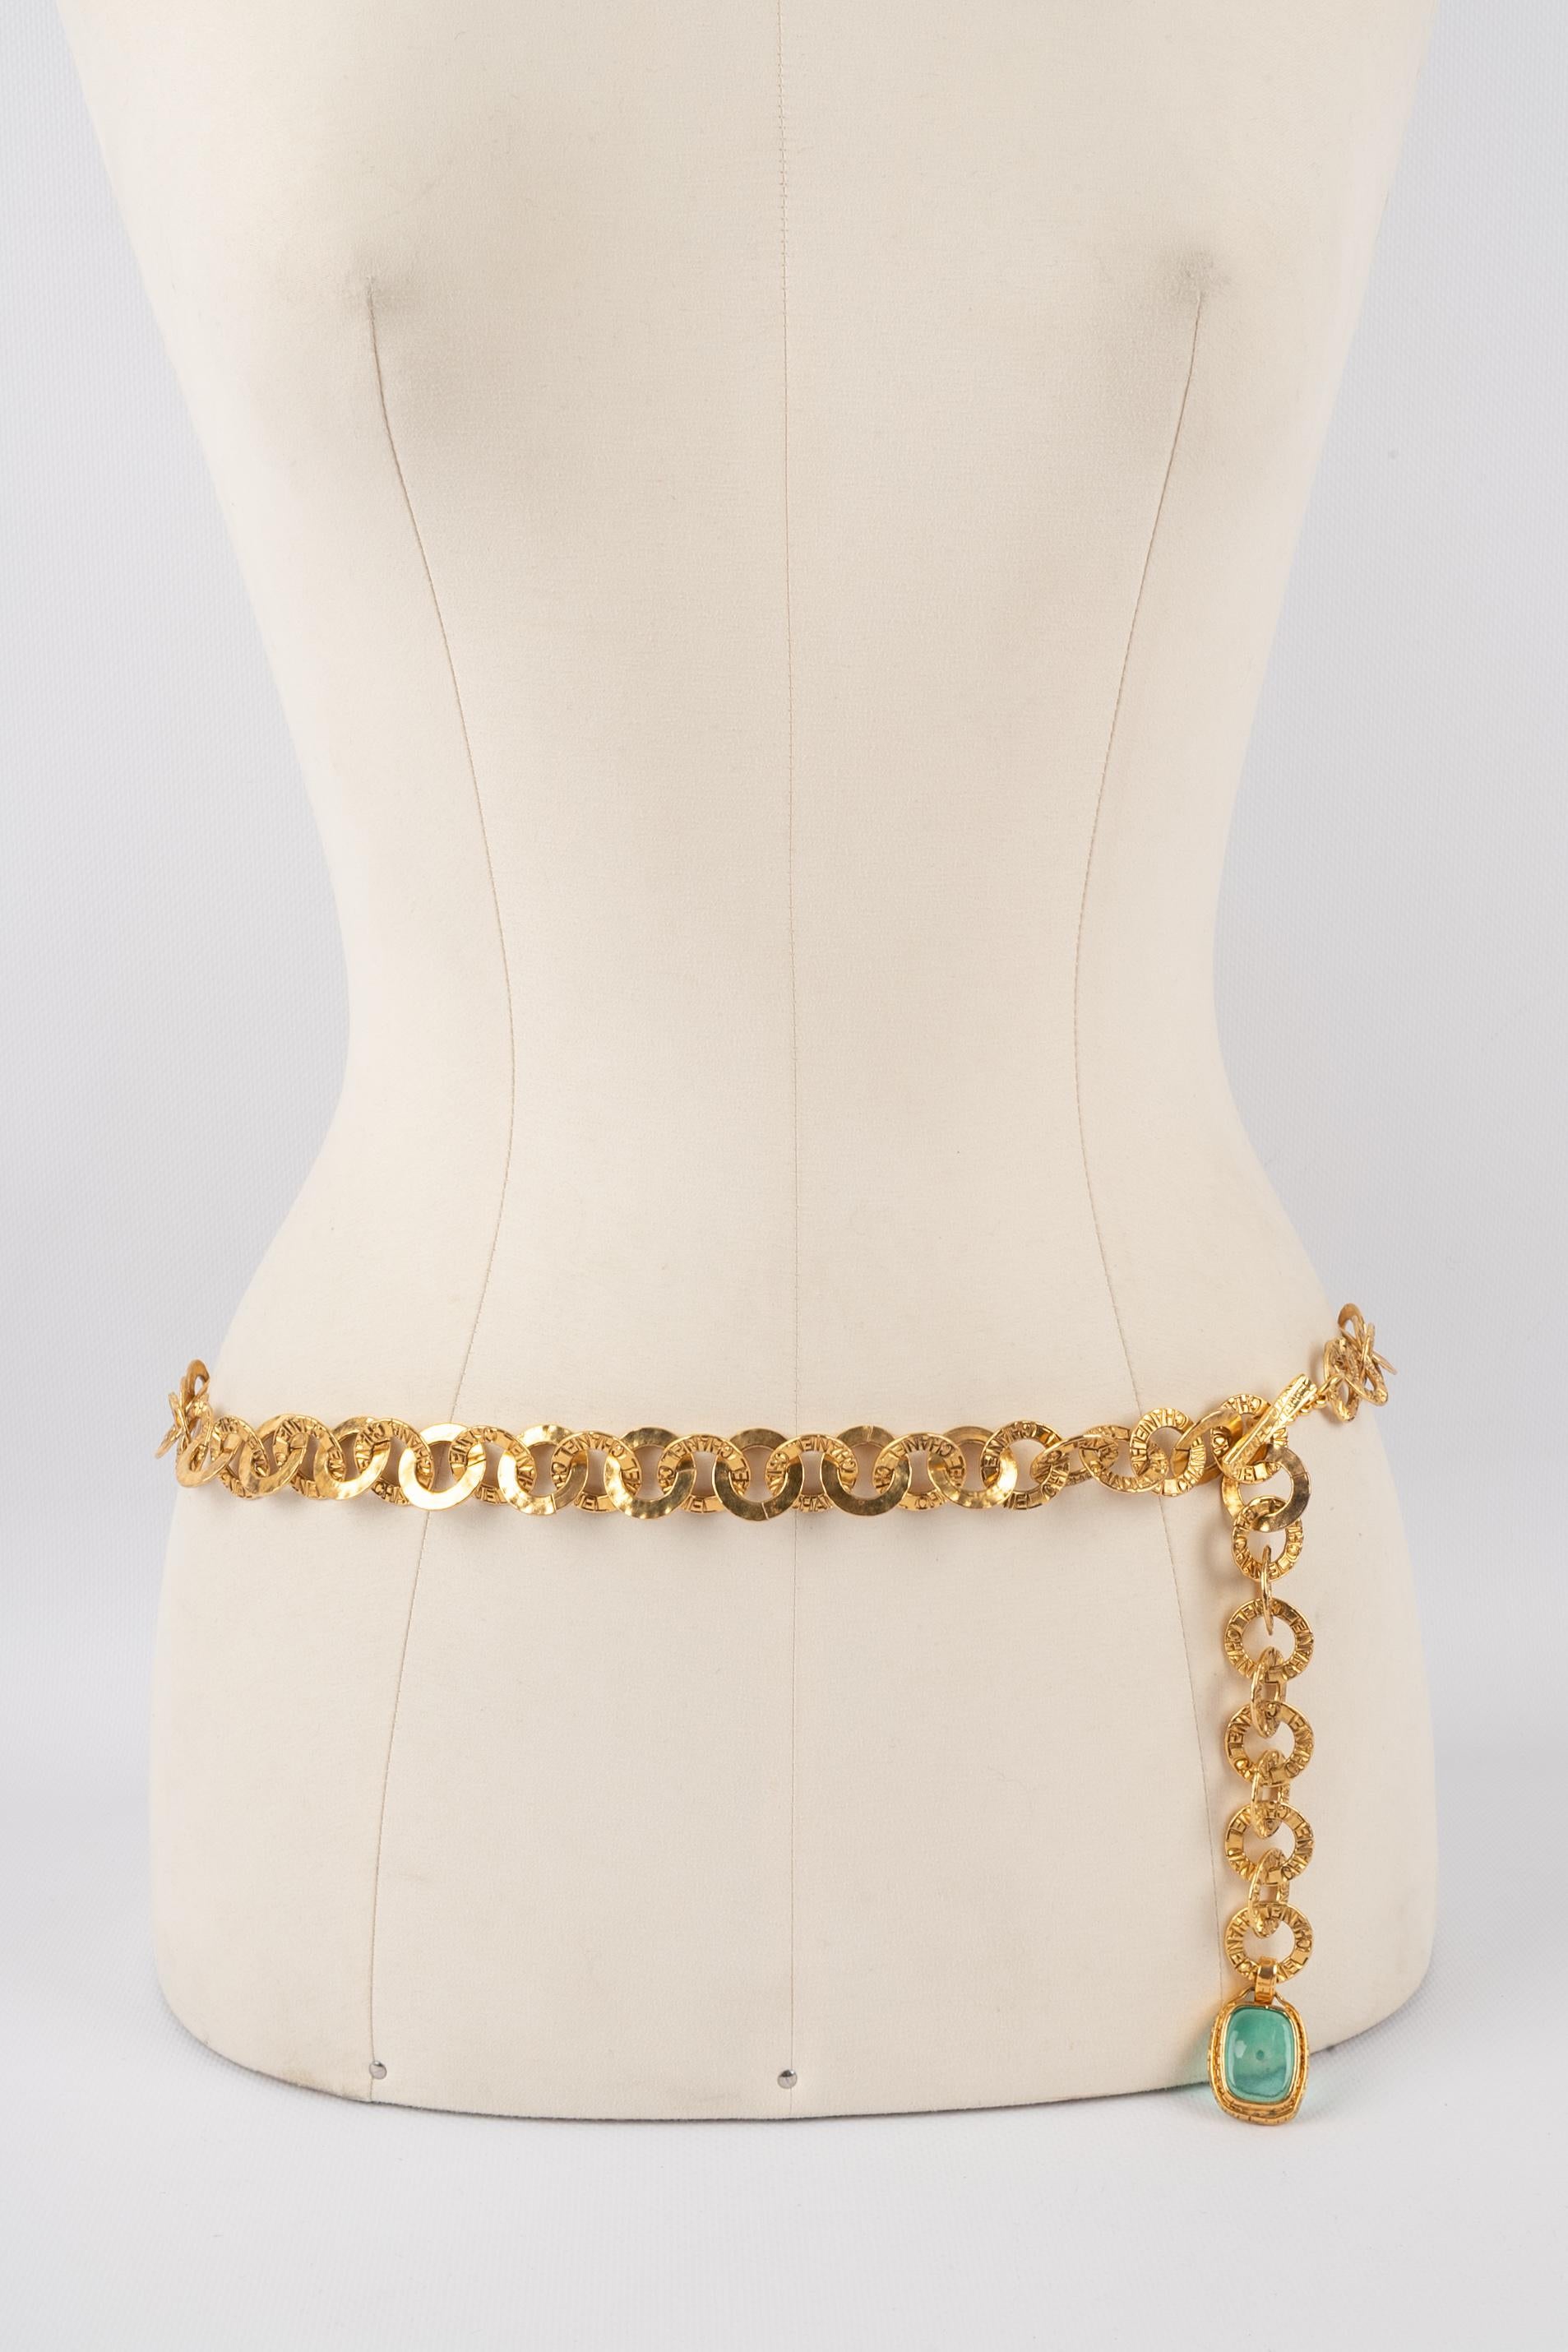 Chanel jewelry belt 7